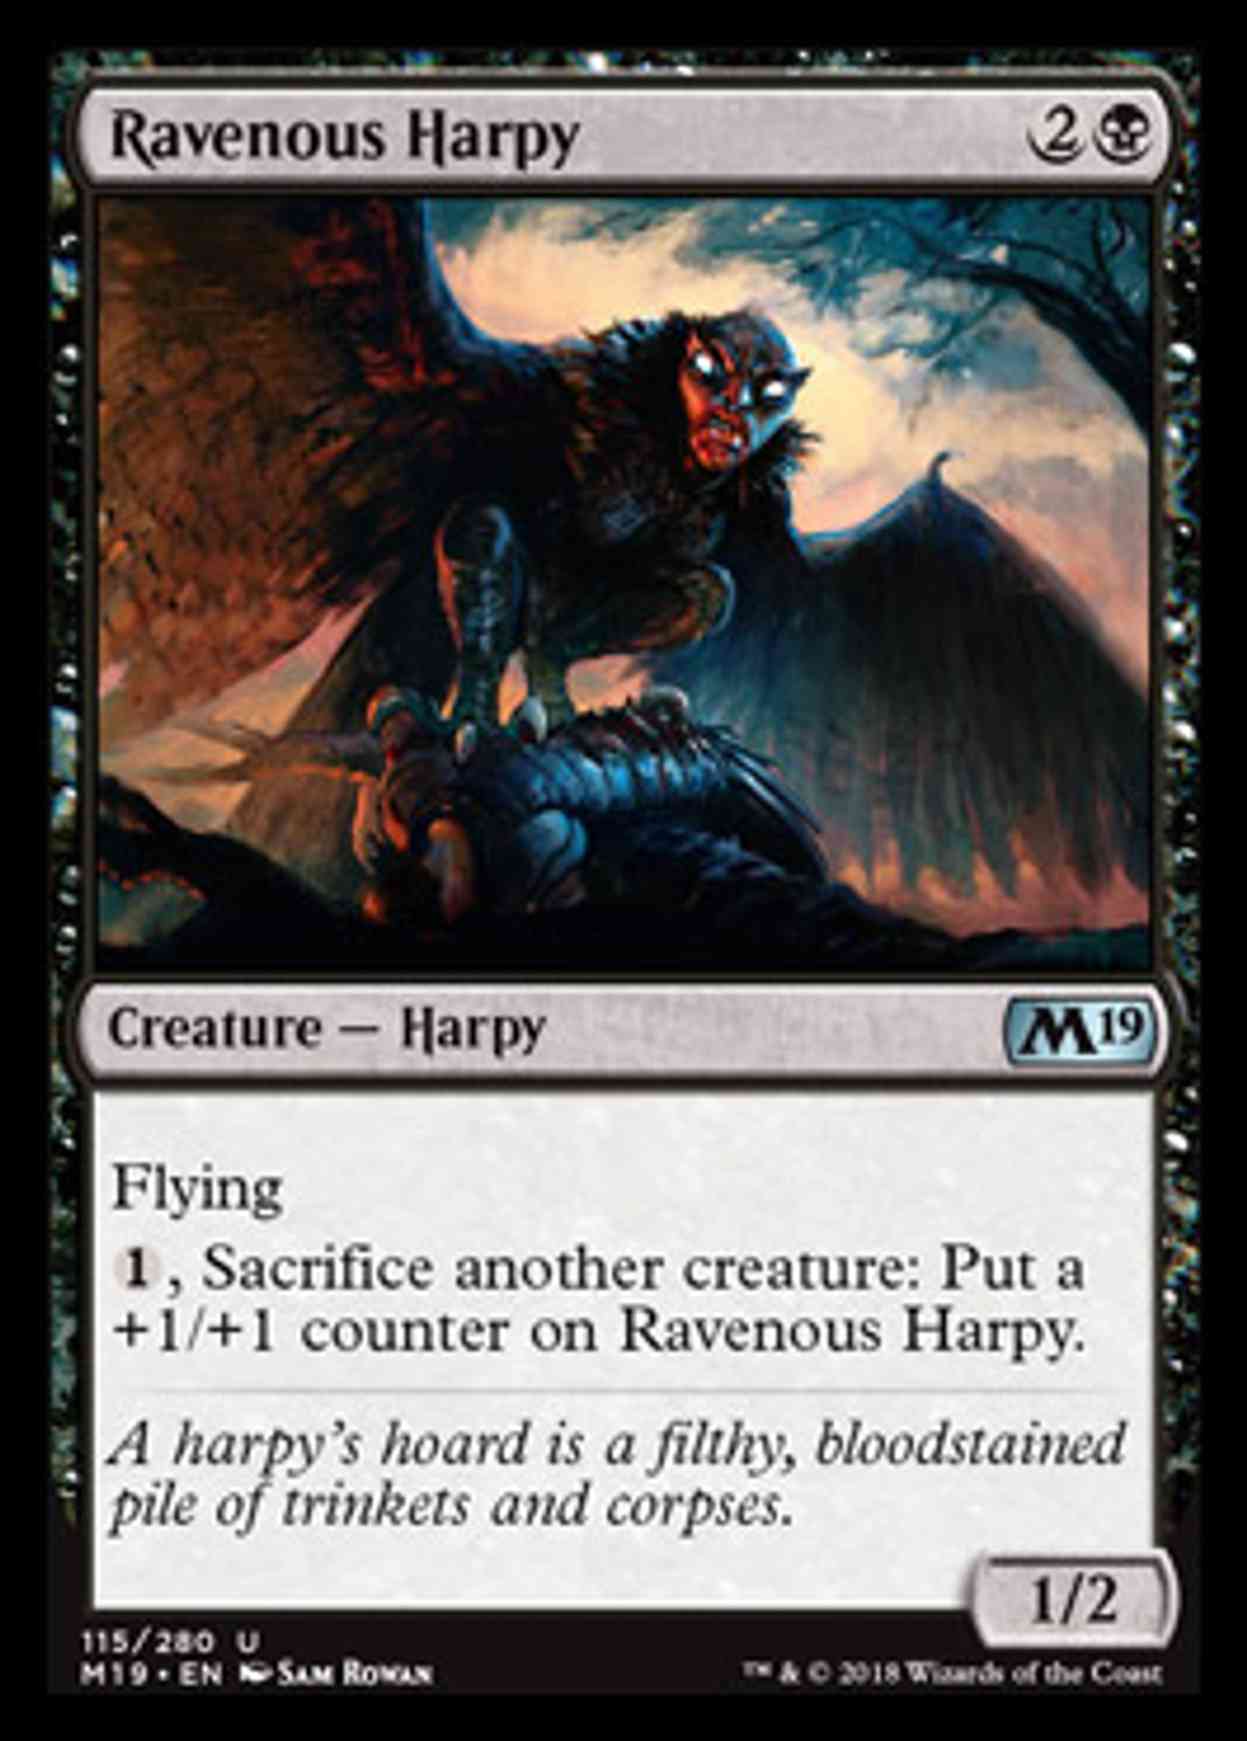 Ravenous Harpy magic card front